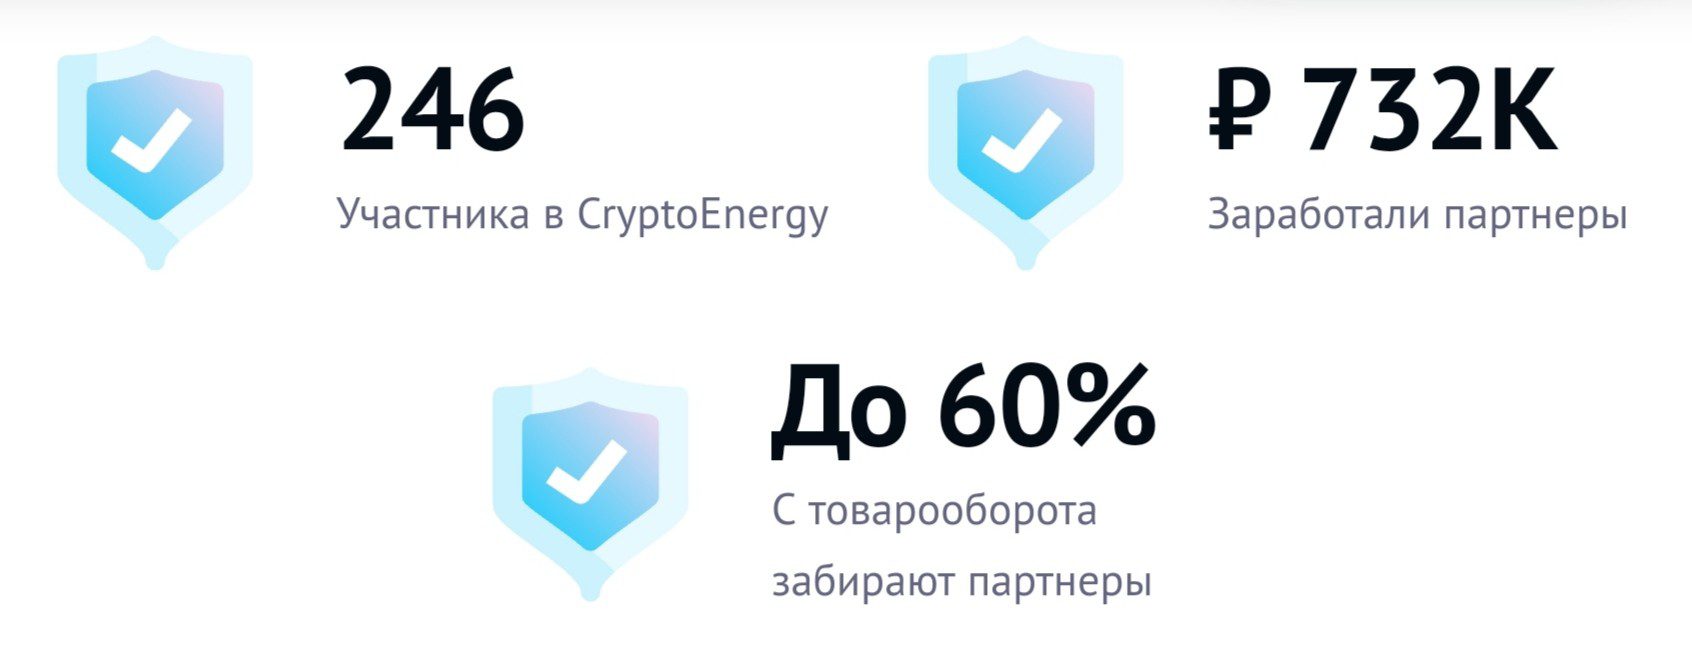 cryptoenergypro обзор проекта